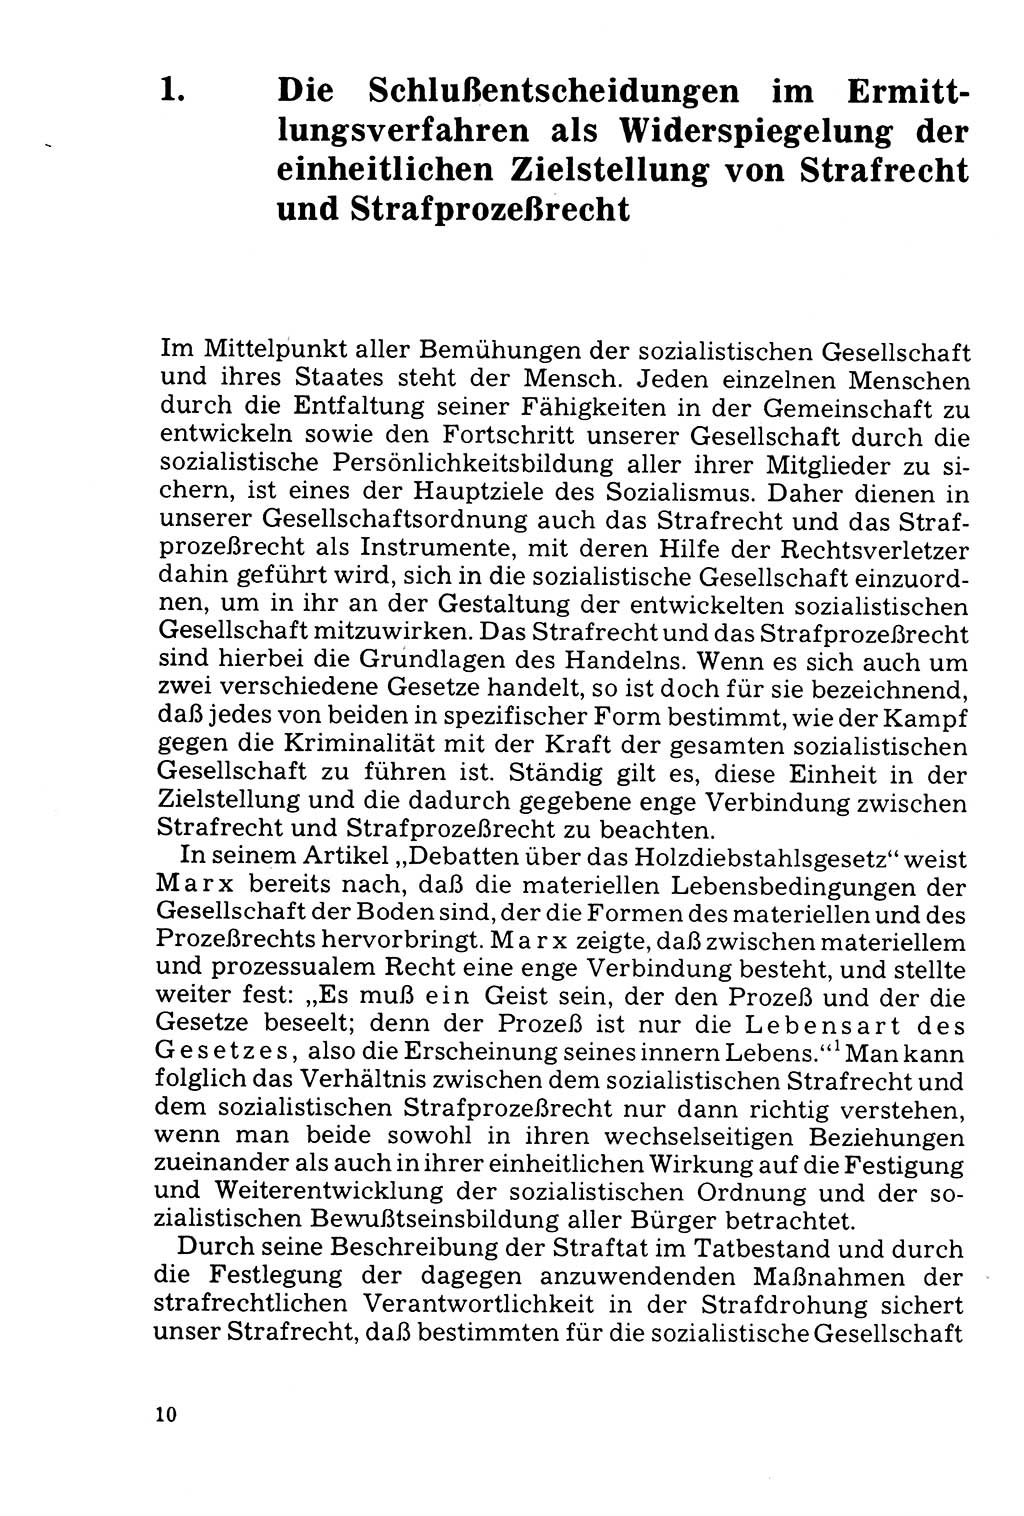 Der Abschluß des Ermittlungsverfahrens [Deutsche Demokratische Republik (DDR)] 1978, Seite 10 (Abschl. EV DDR 1978, S. 10)